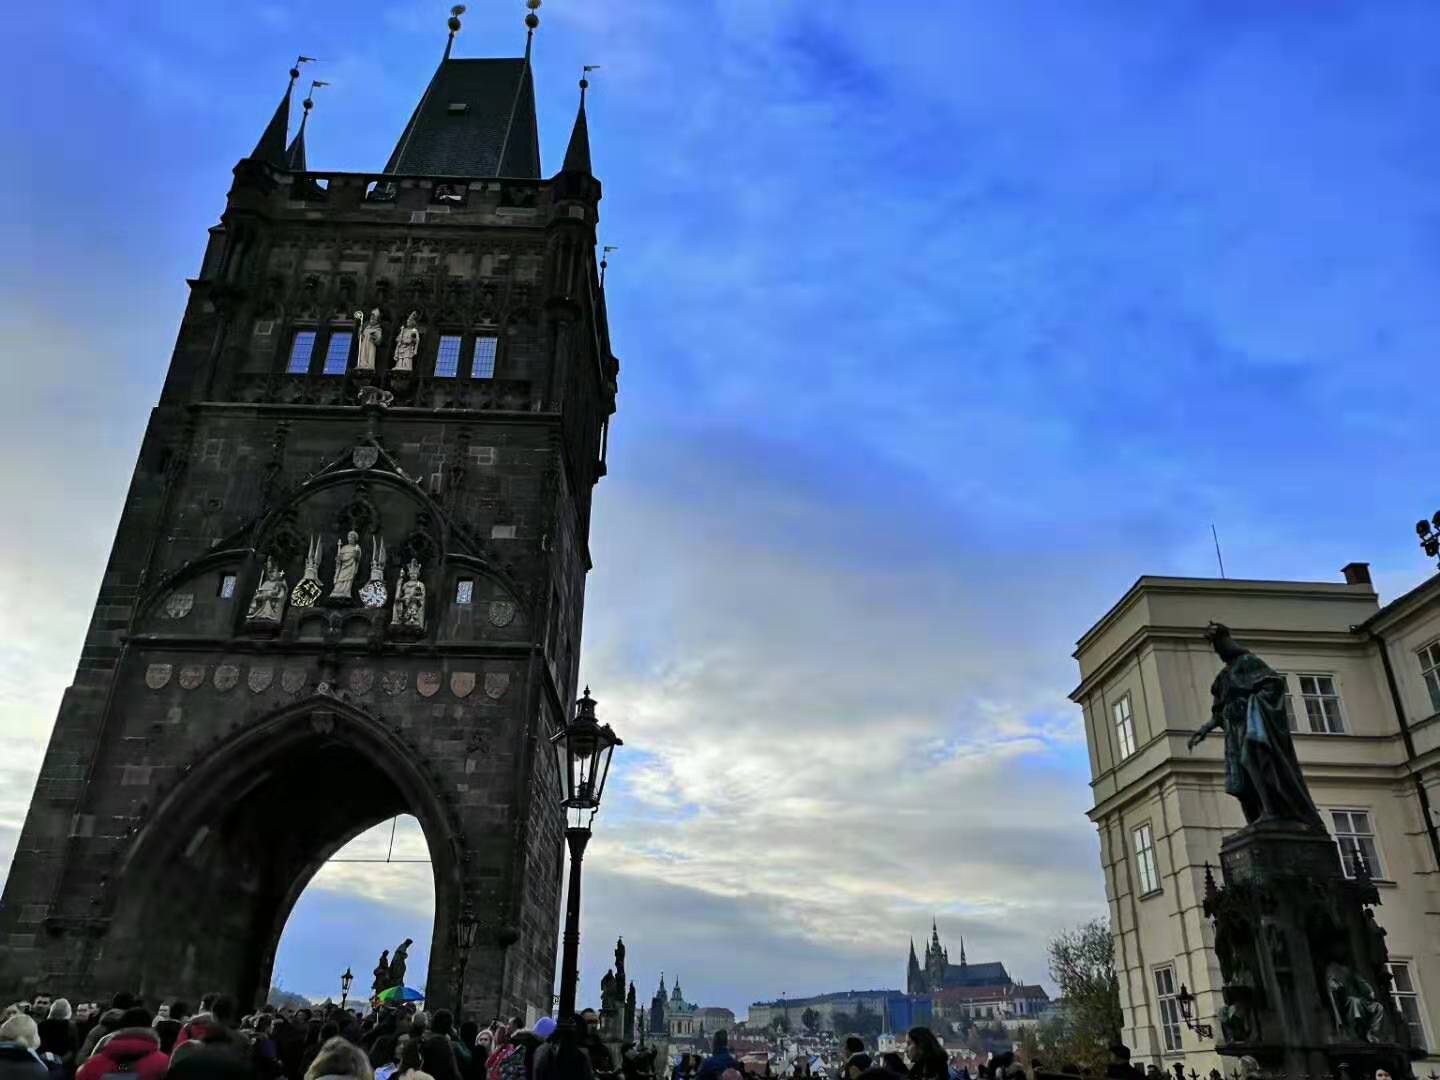 【携程攻略】布拉格老城桥塔景点,老城桥塔是世界哥特式建筑风格最杰出的瑰宝之一，兴建于西元十四世纪…